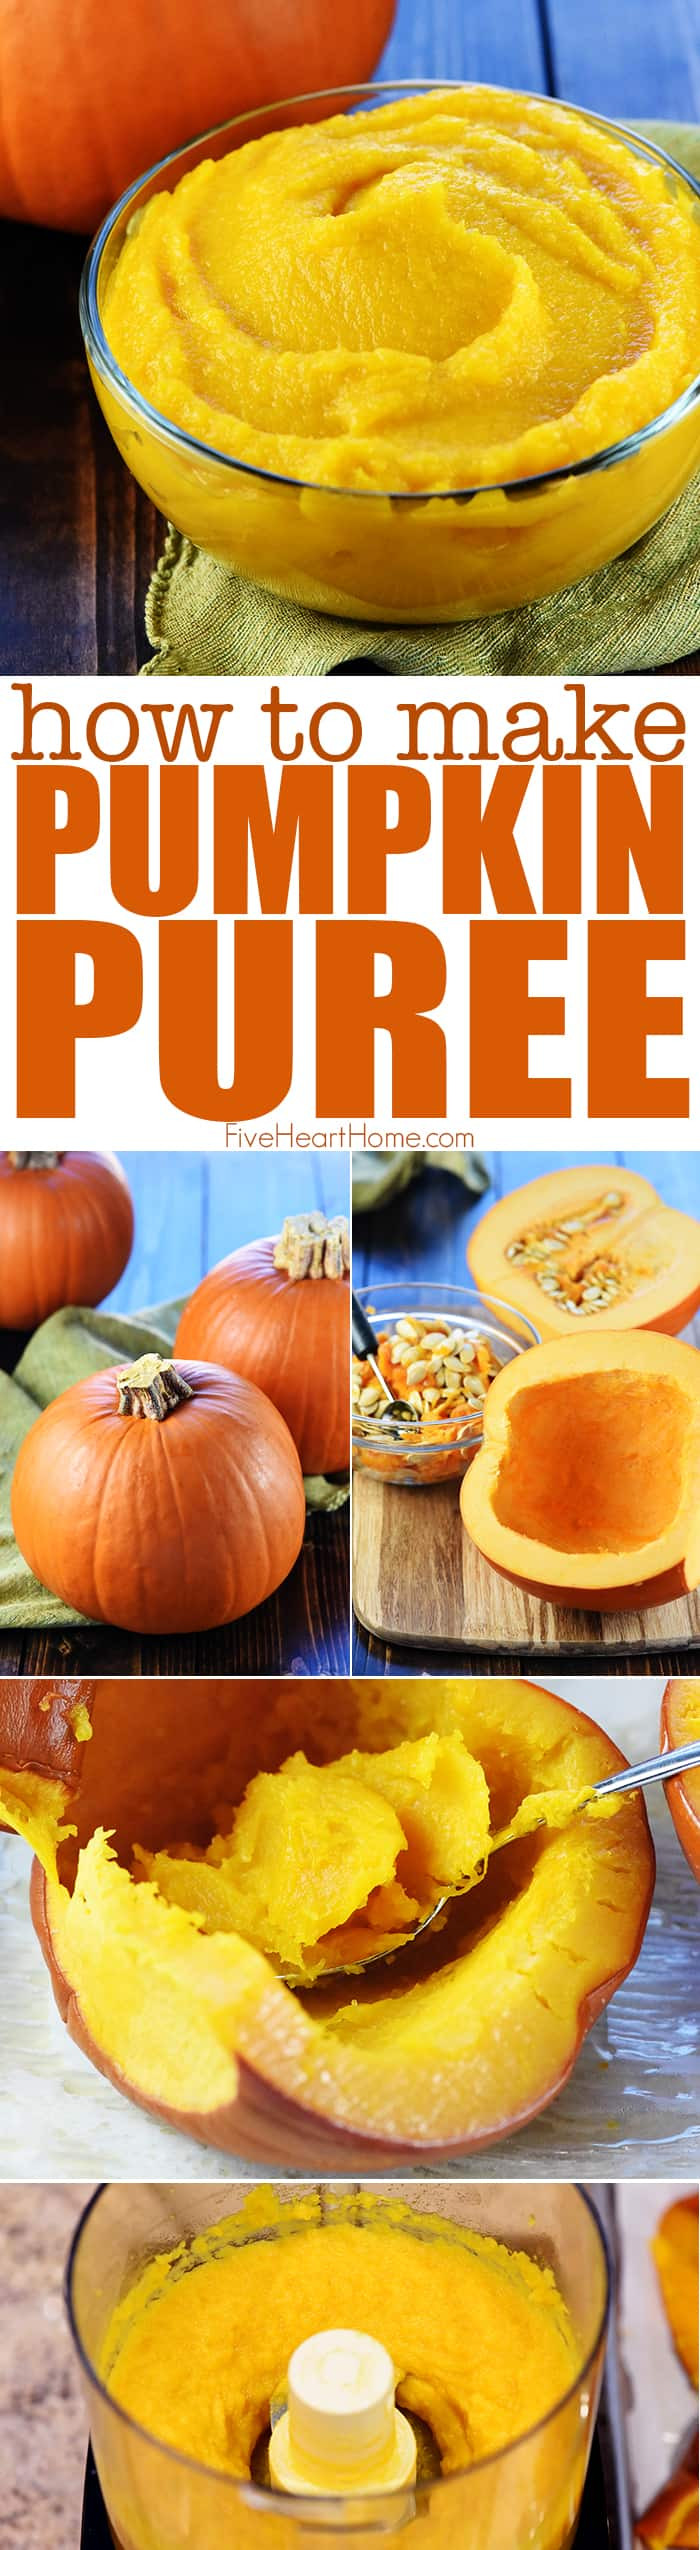 Pumpkin Puree Recipes Healthy
 EASY Homemade Pumpkin Puree • FIVEheartHOME